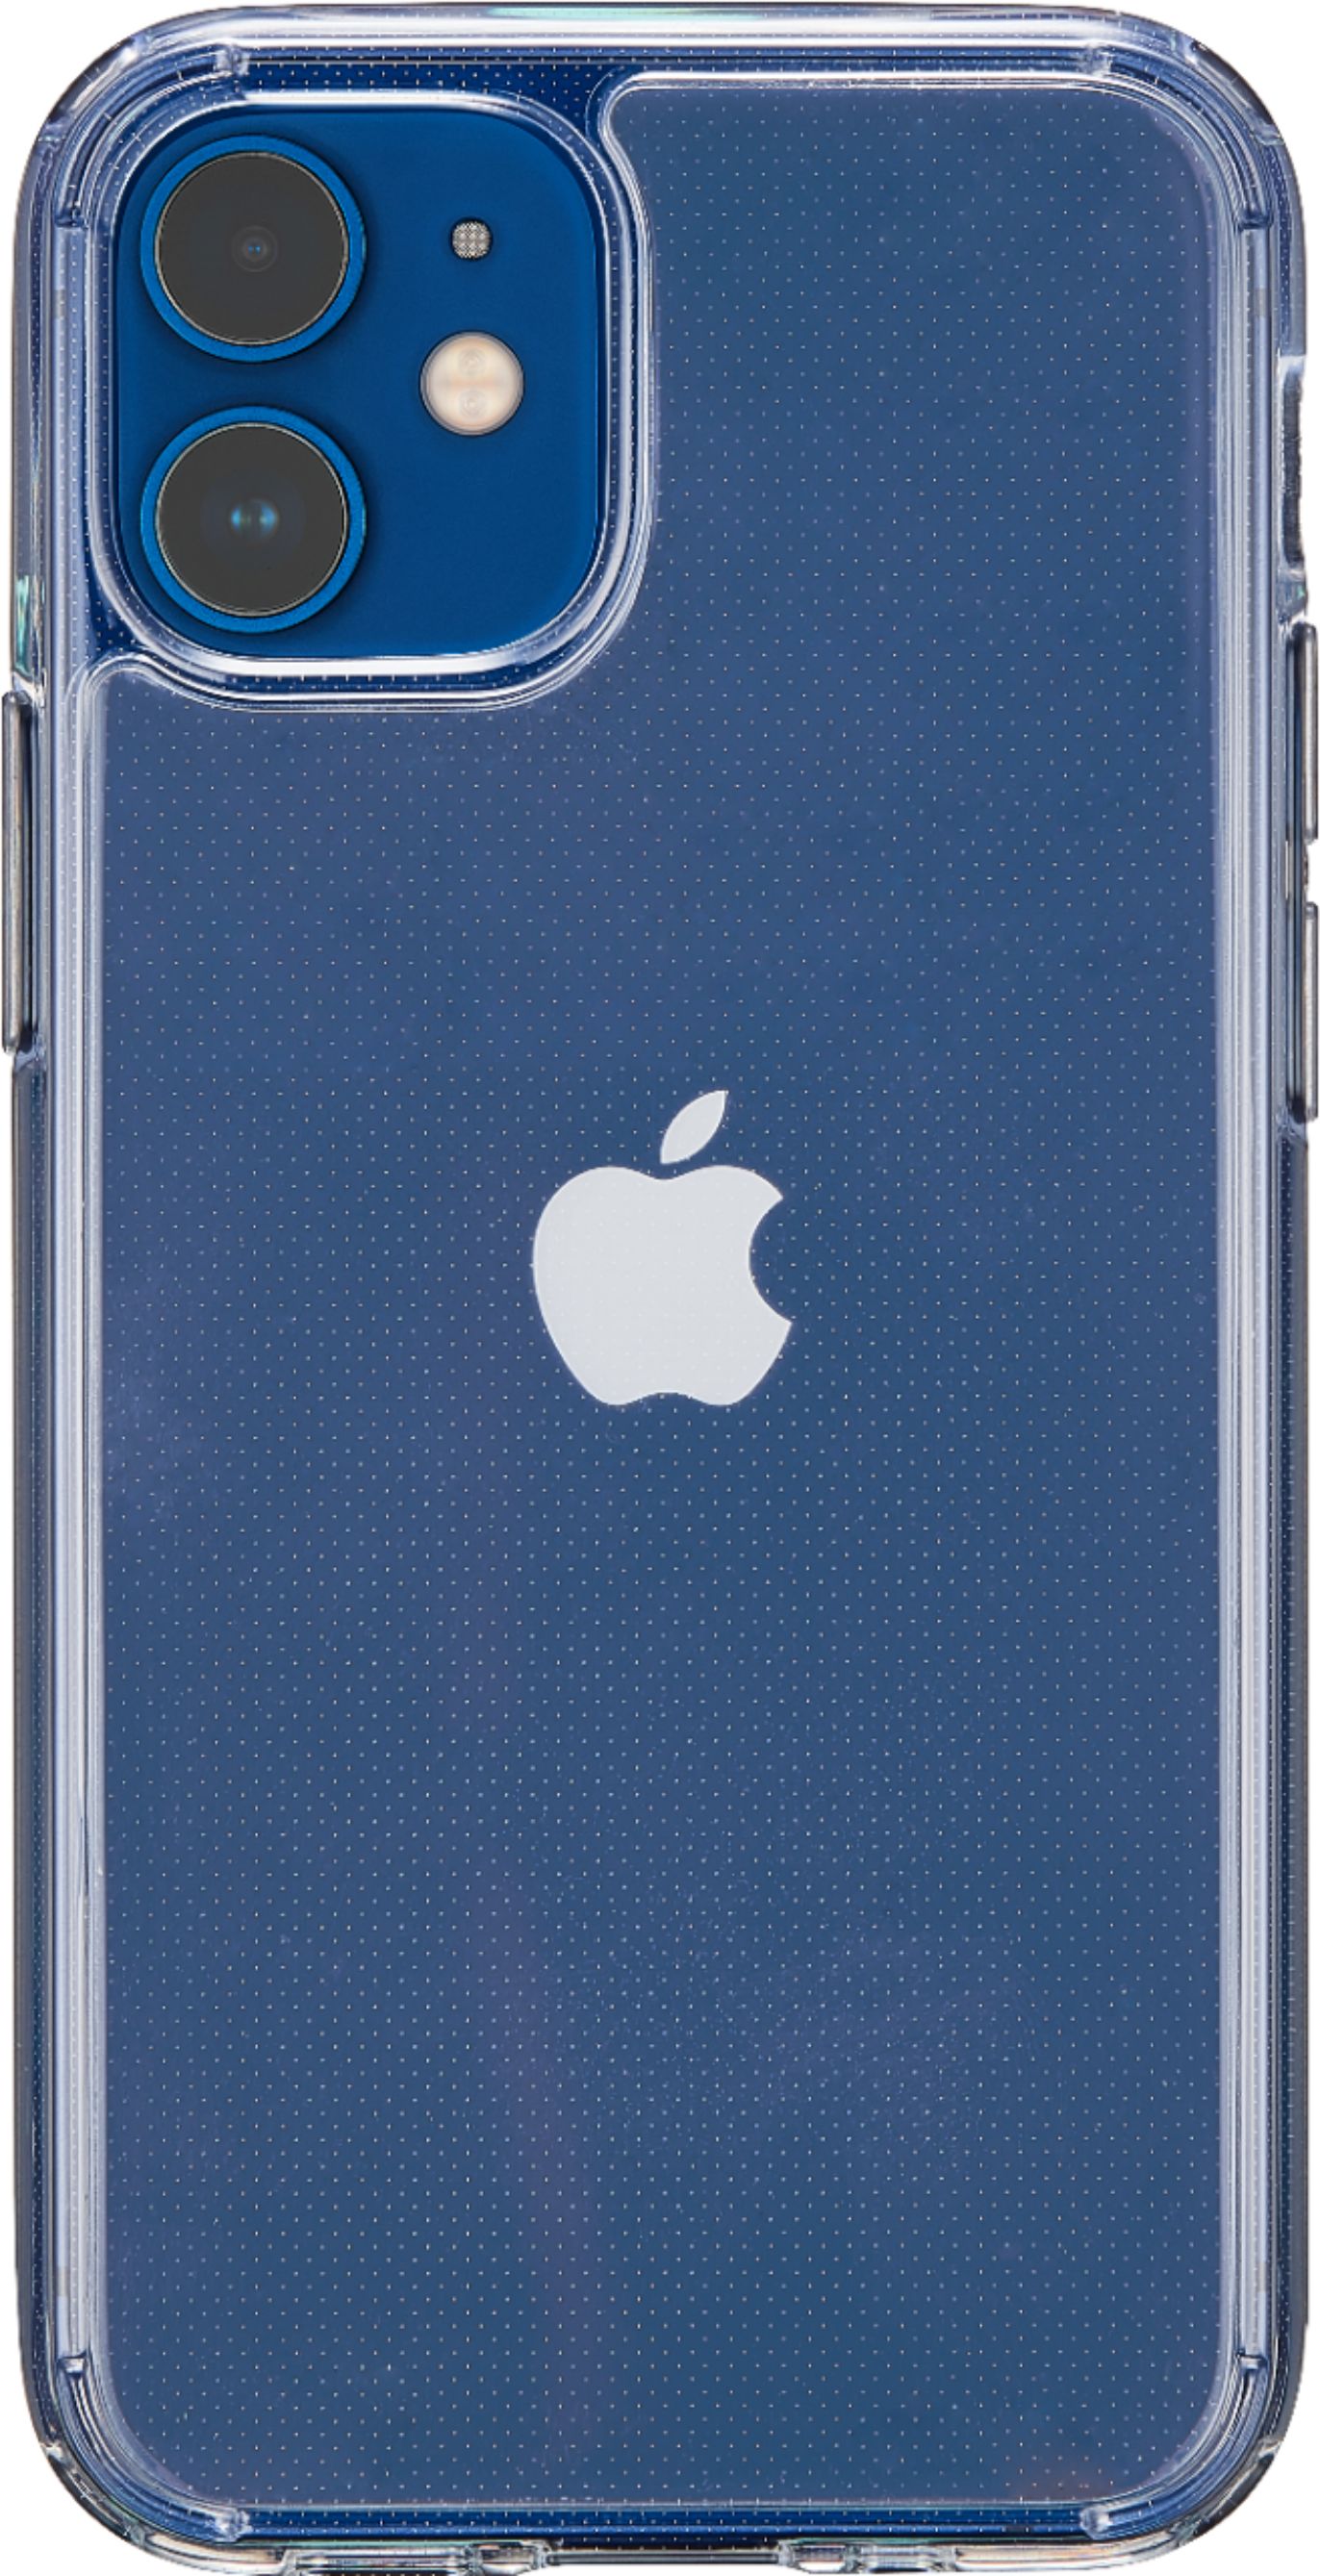 Best iPhone 12 Mini Cases